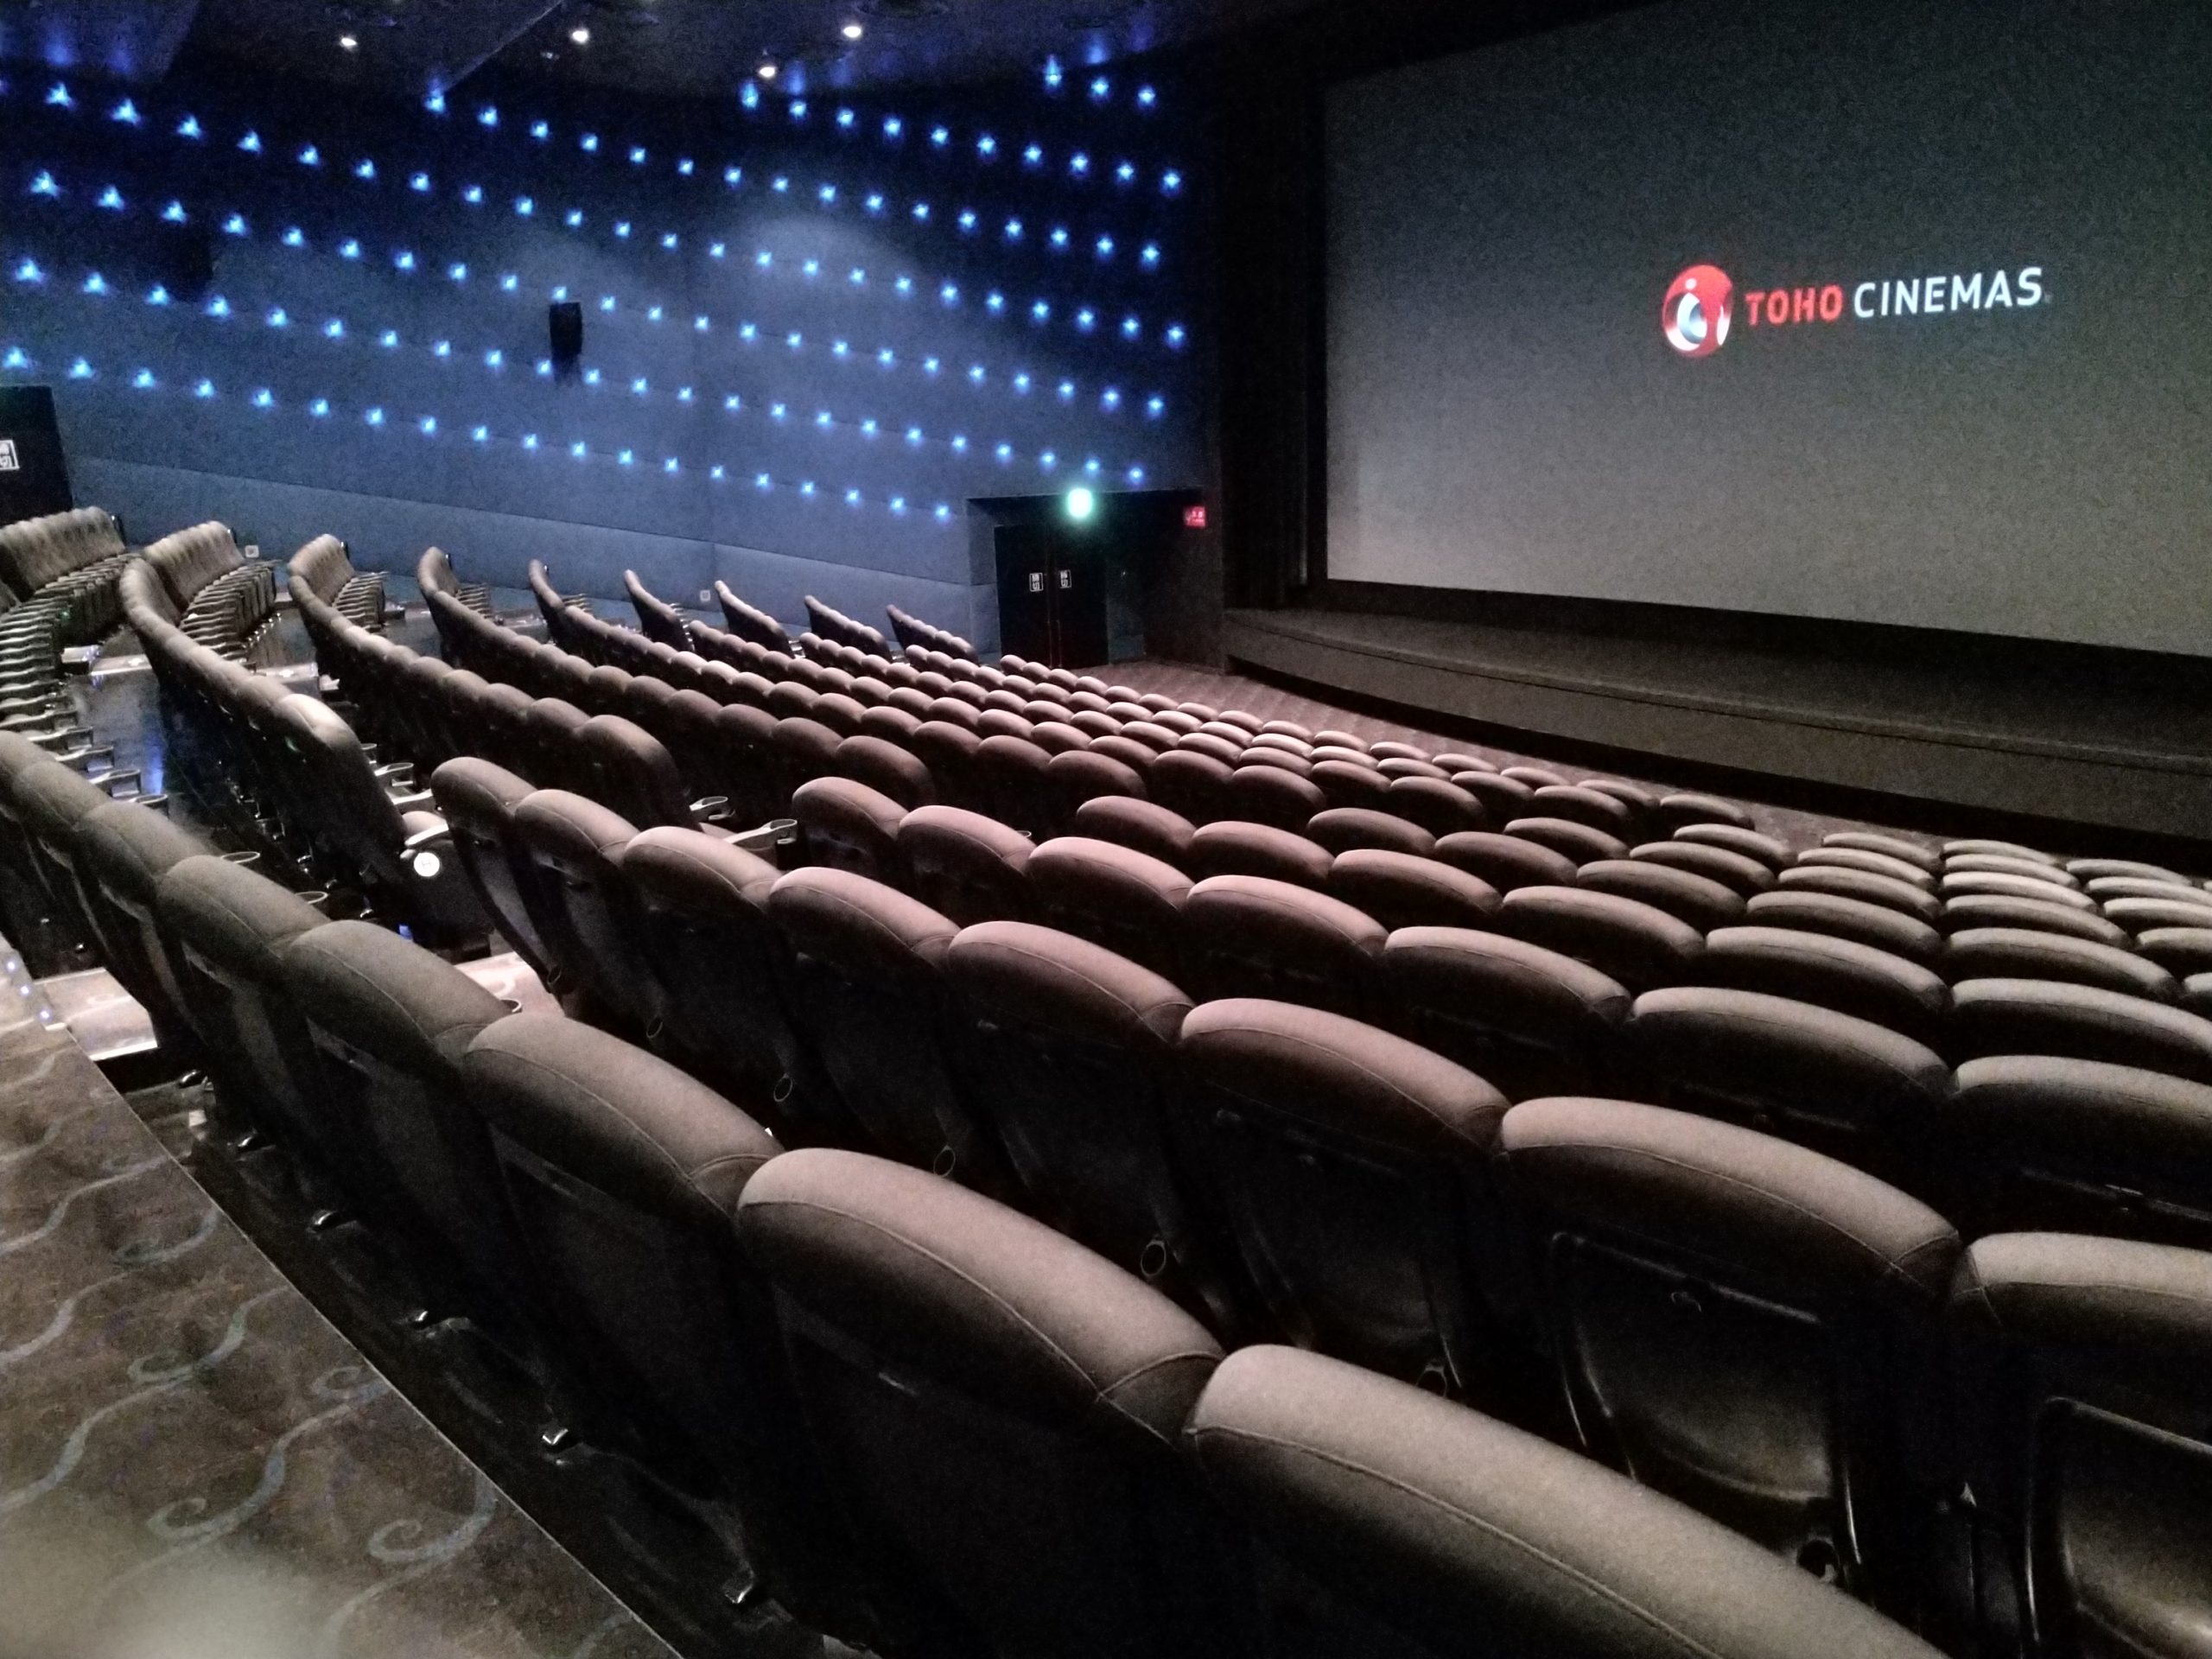 スクリーン12 Tohoシネマズ日比谷の見やすい座席位置 画像付き キネマフリーク 映画産業を盛り上げる映画館ブログ